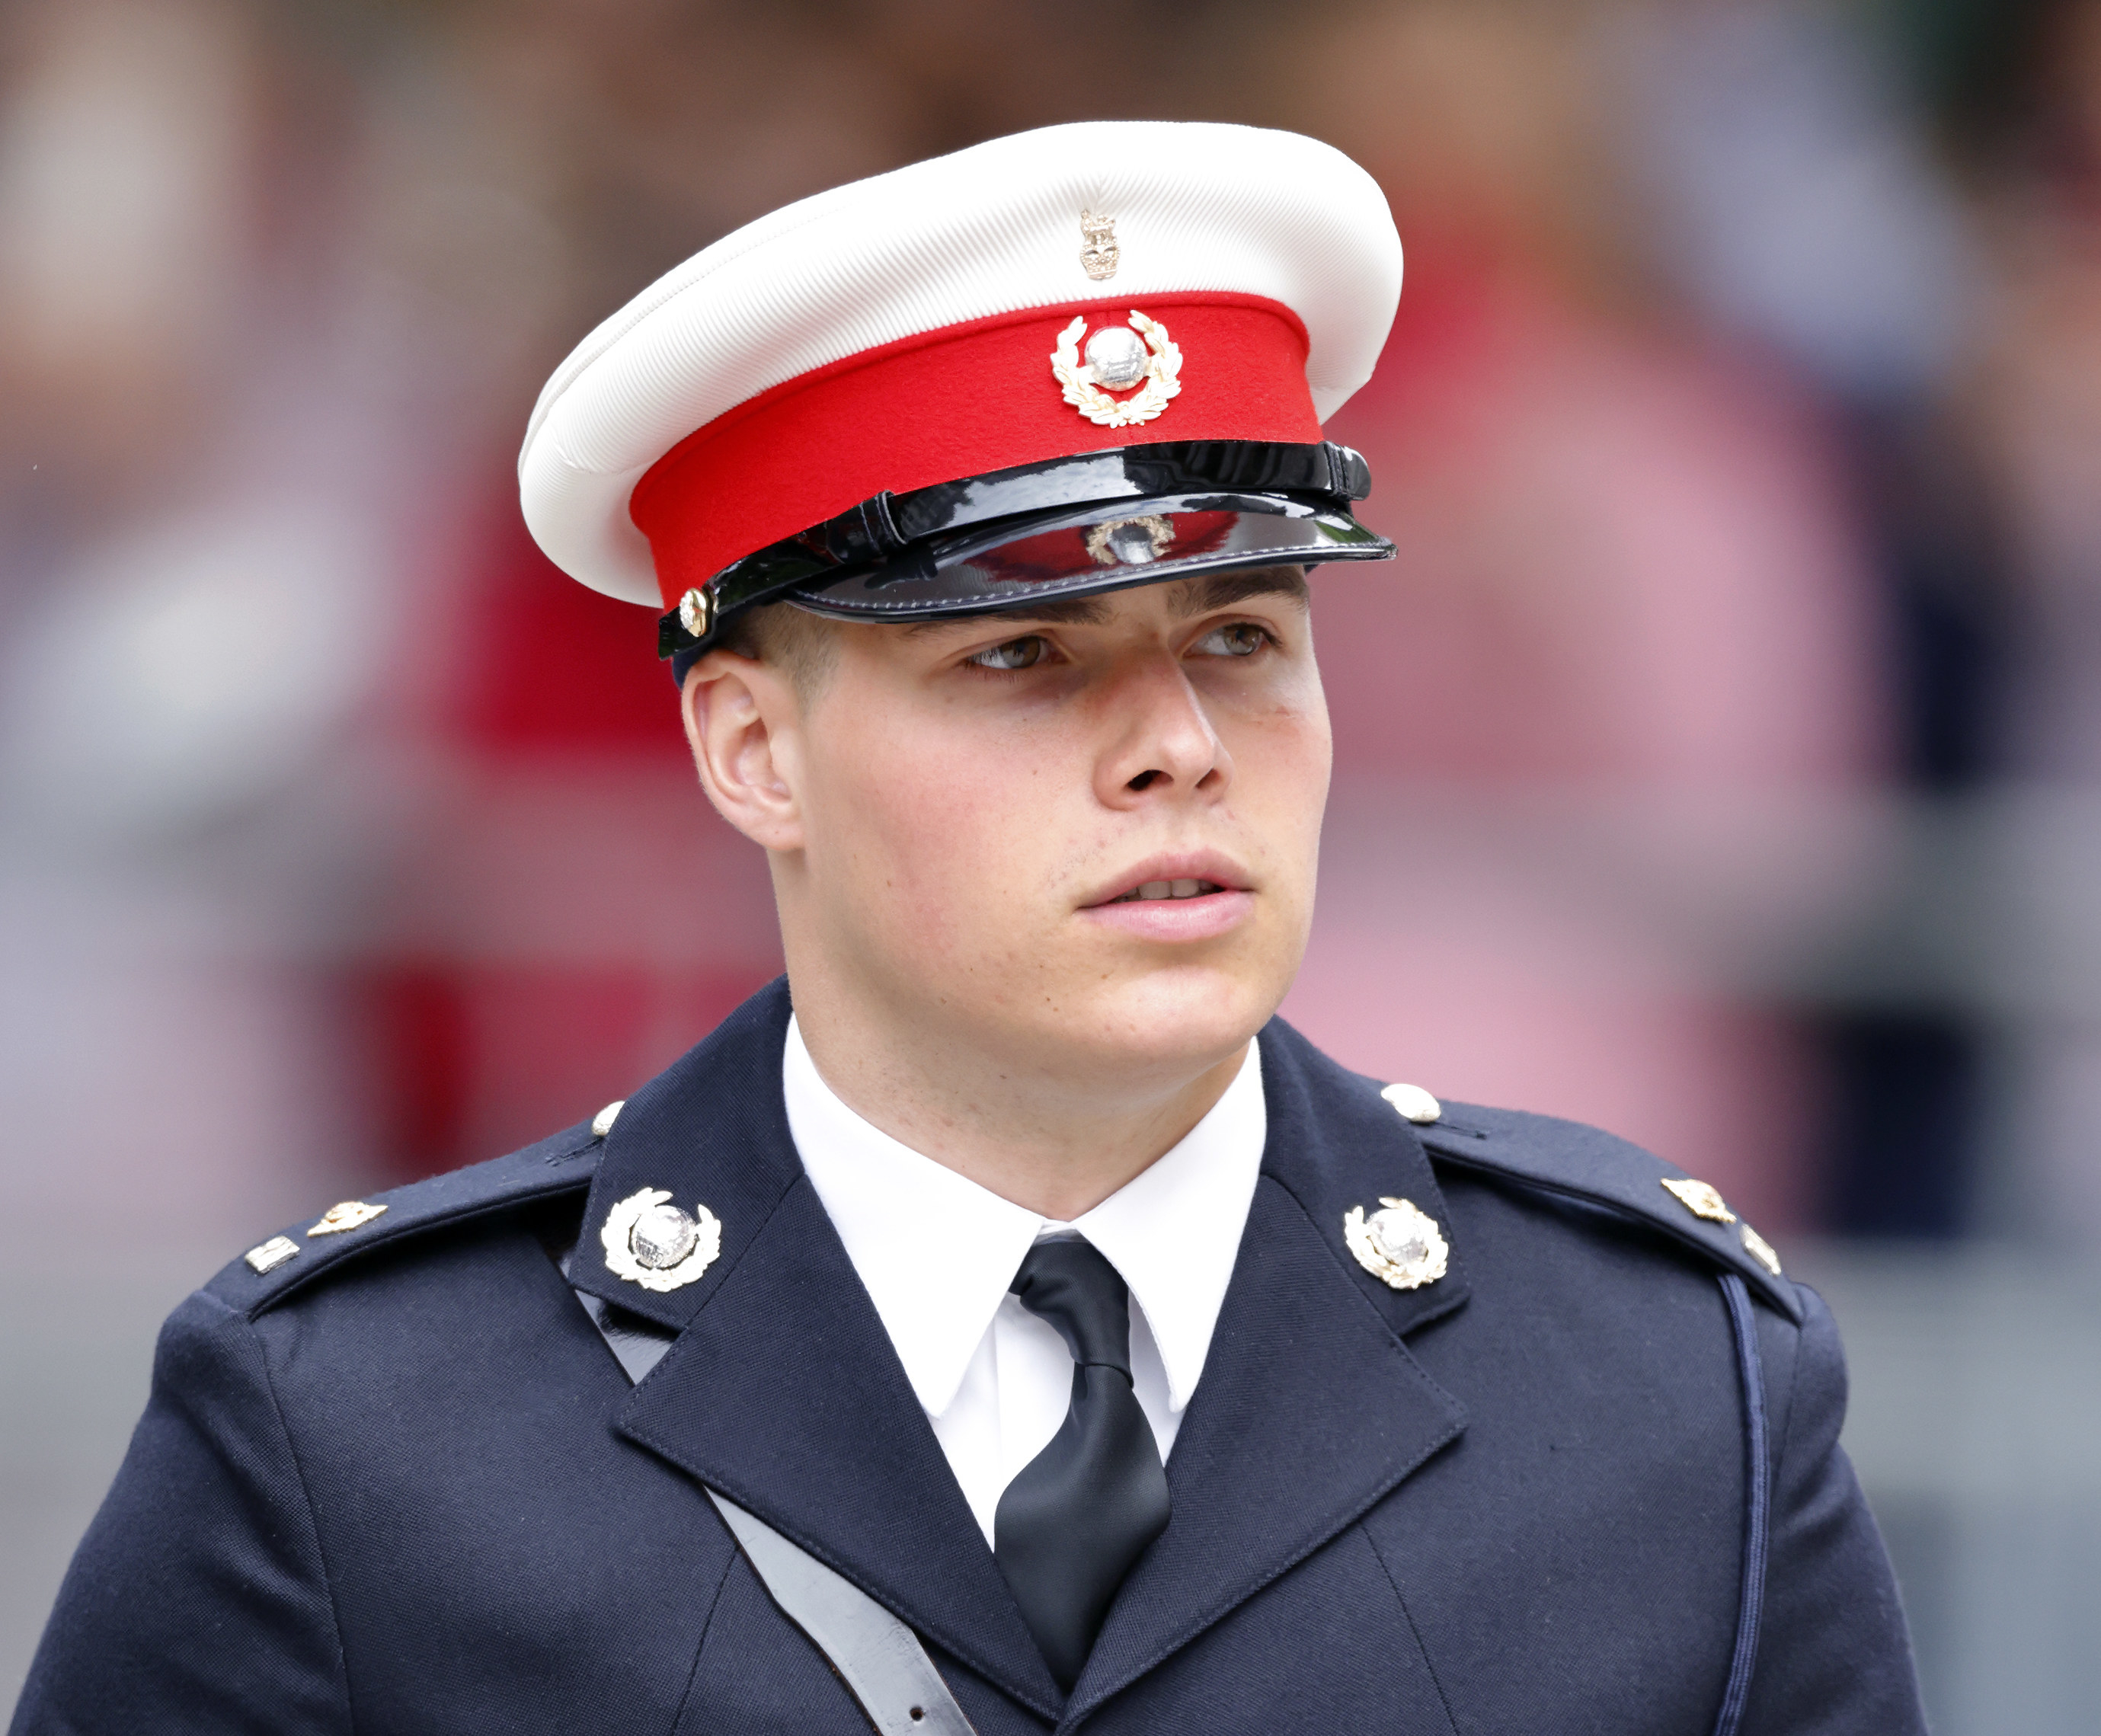 Arthur Chatto in uniform